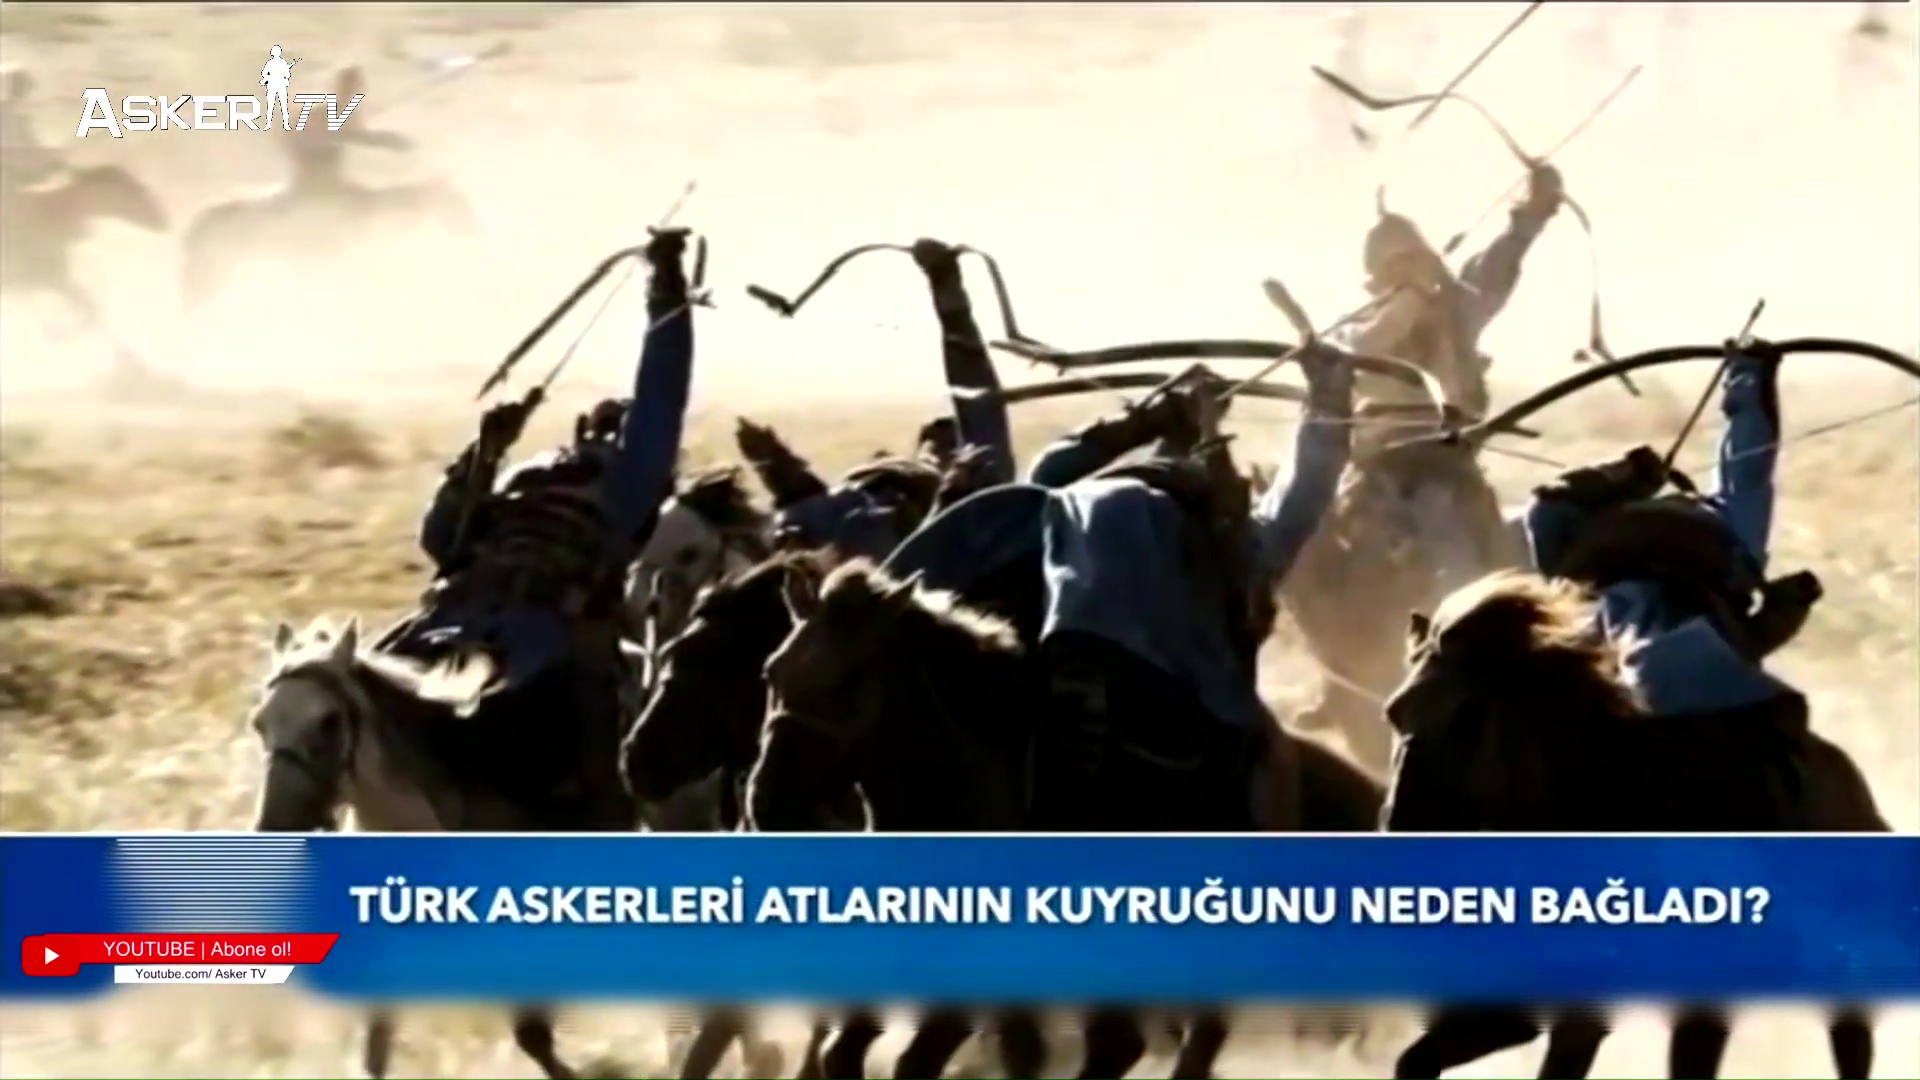 turk-askerleri-atlarinin-kuyrugunu-neden-baglardi